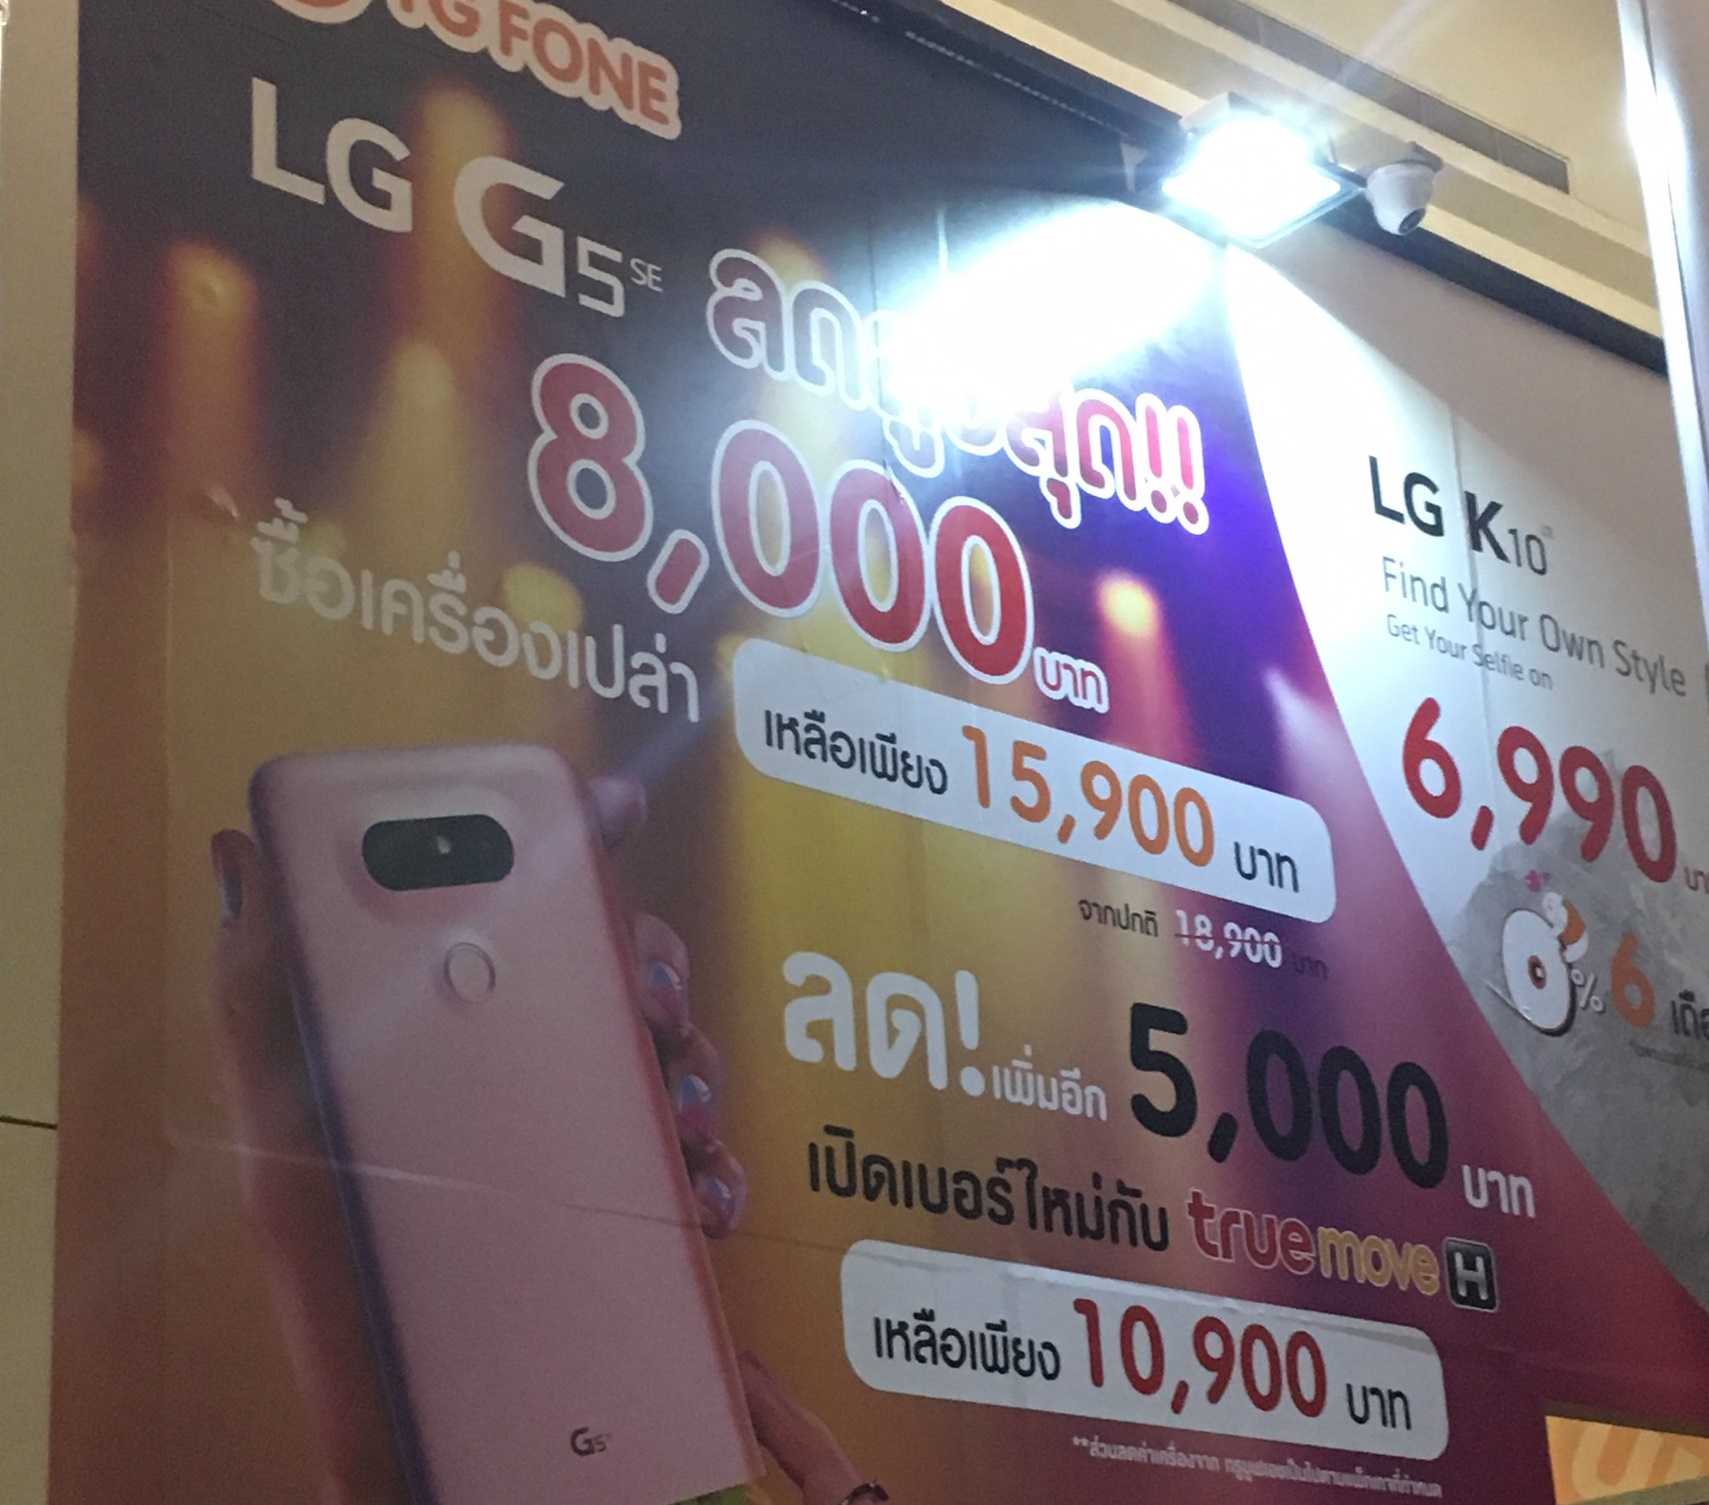 S 3653906 0 1 | mobile expo 2016 | จับตาตัวเด็ด Mobile Expo : ภาพหลุด LG G5 se ลดกระหน่ำร่วมกับ True เหลือเพียง 10,900 พร้อมของแถมเพียบเมื่อชำระเป็นเงินสด